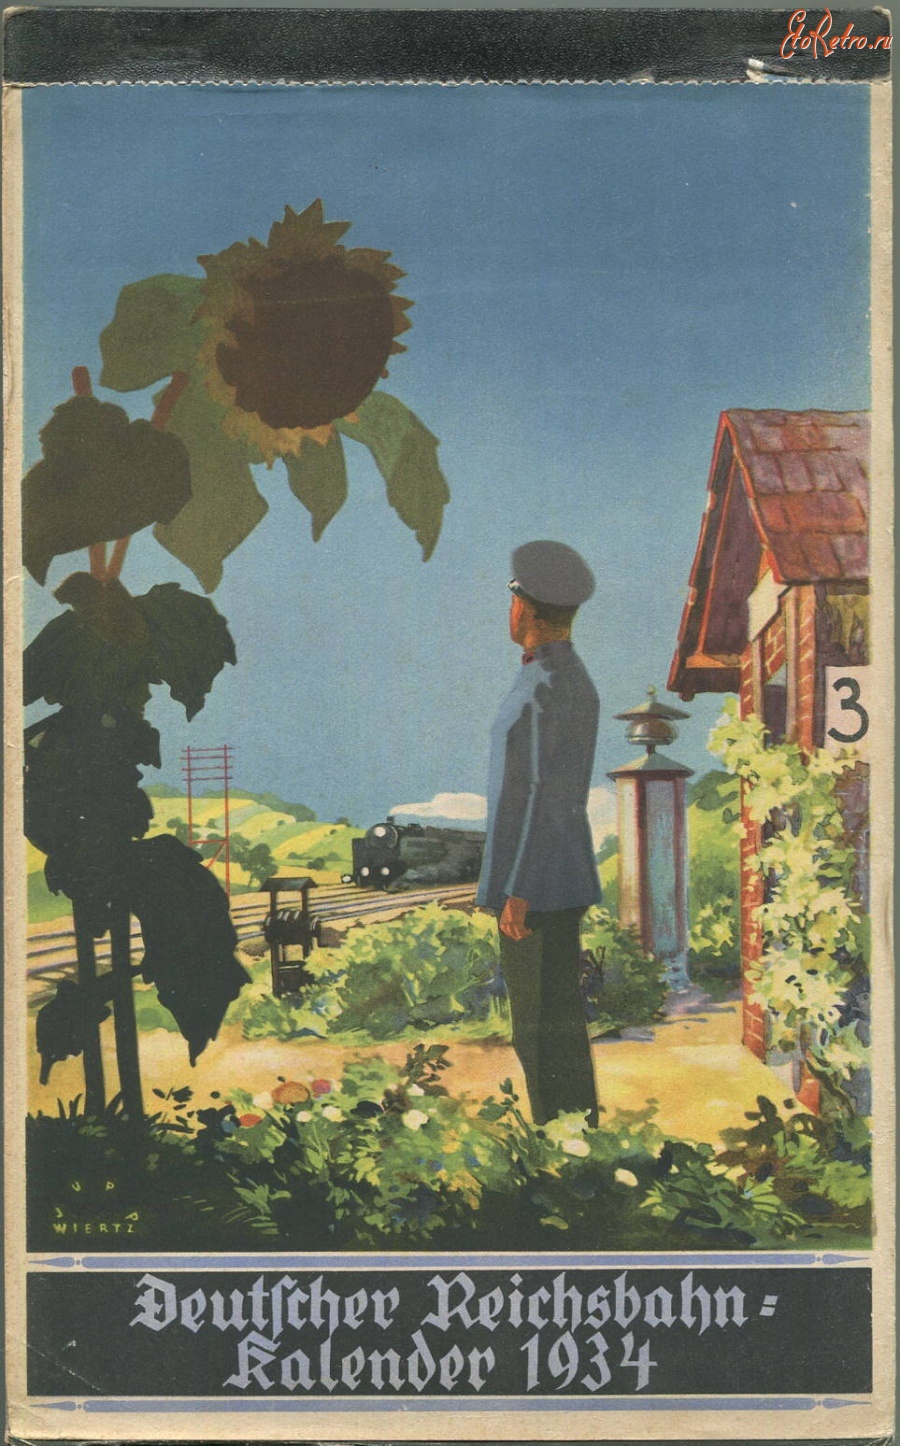 Железная дорога (поезда, паровозы, локомотивы, вагоны) - Календарь немецких железных дорог за 1934 год